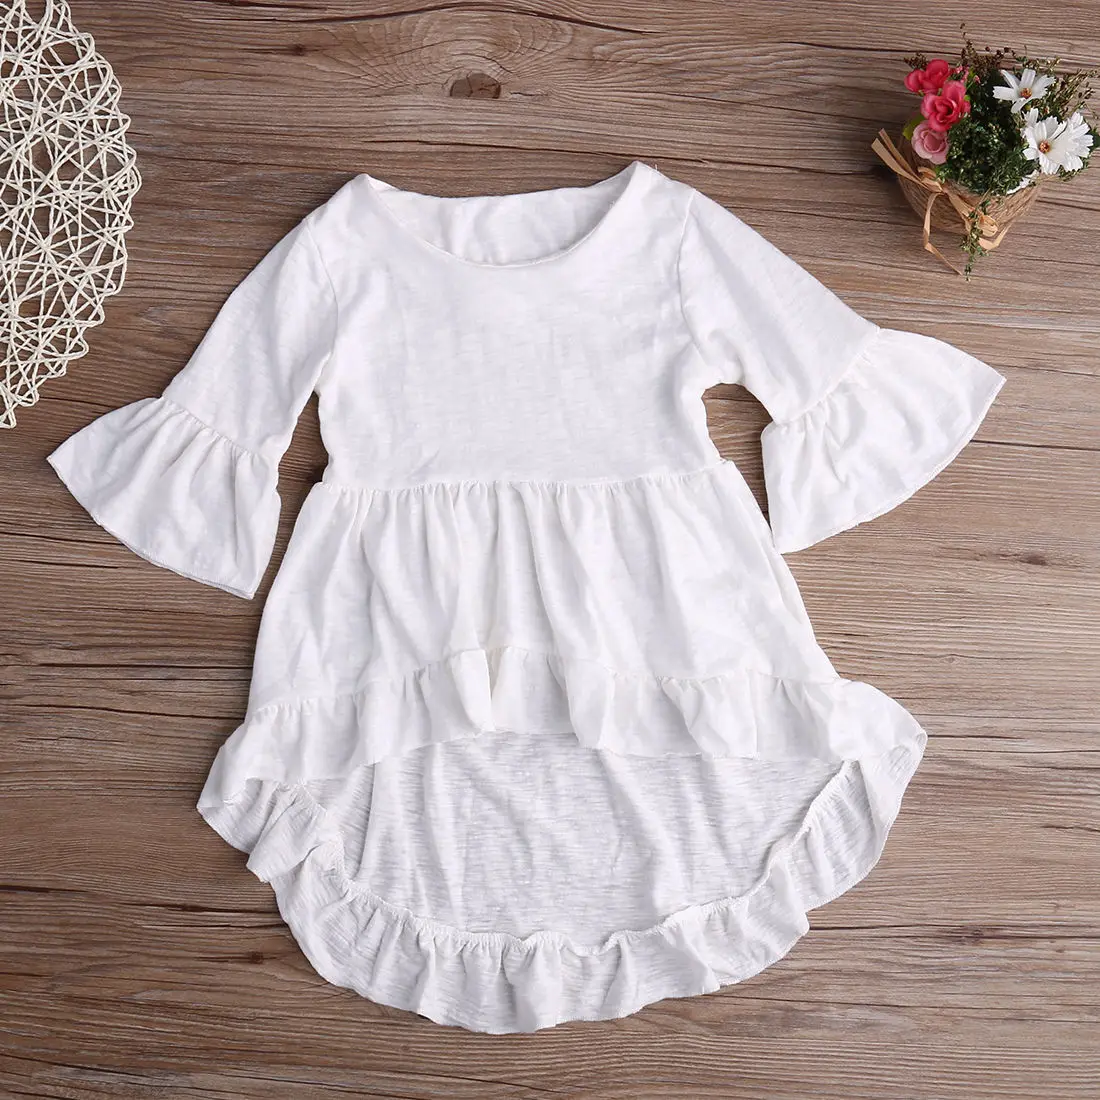 Белая хлопчатобумажная одежда с оборками платье блуза детская одежда одежда для маленьких девочек элегантная красивая одежда в стиле принцессы новинка для девочек